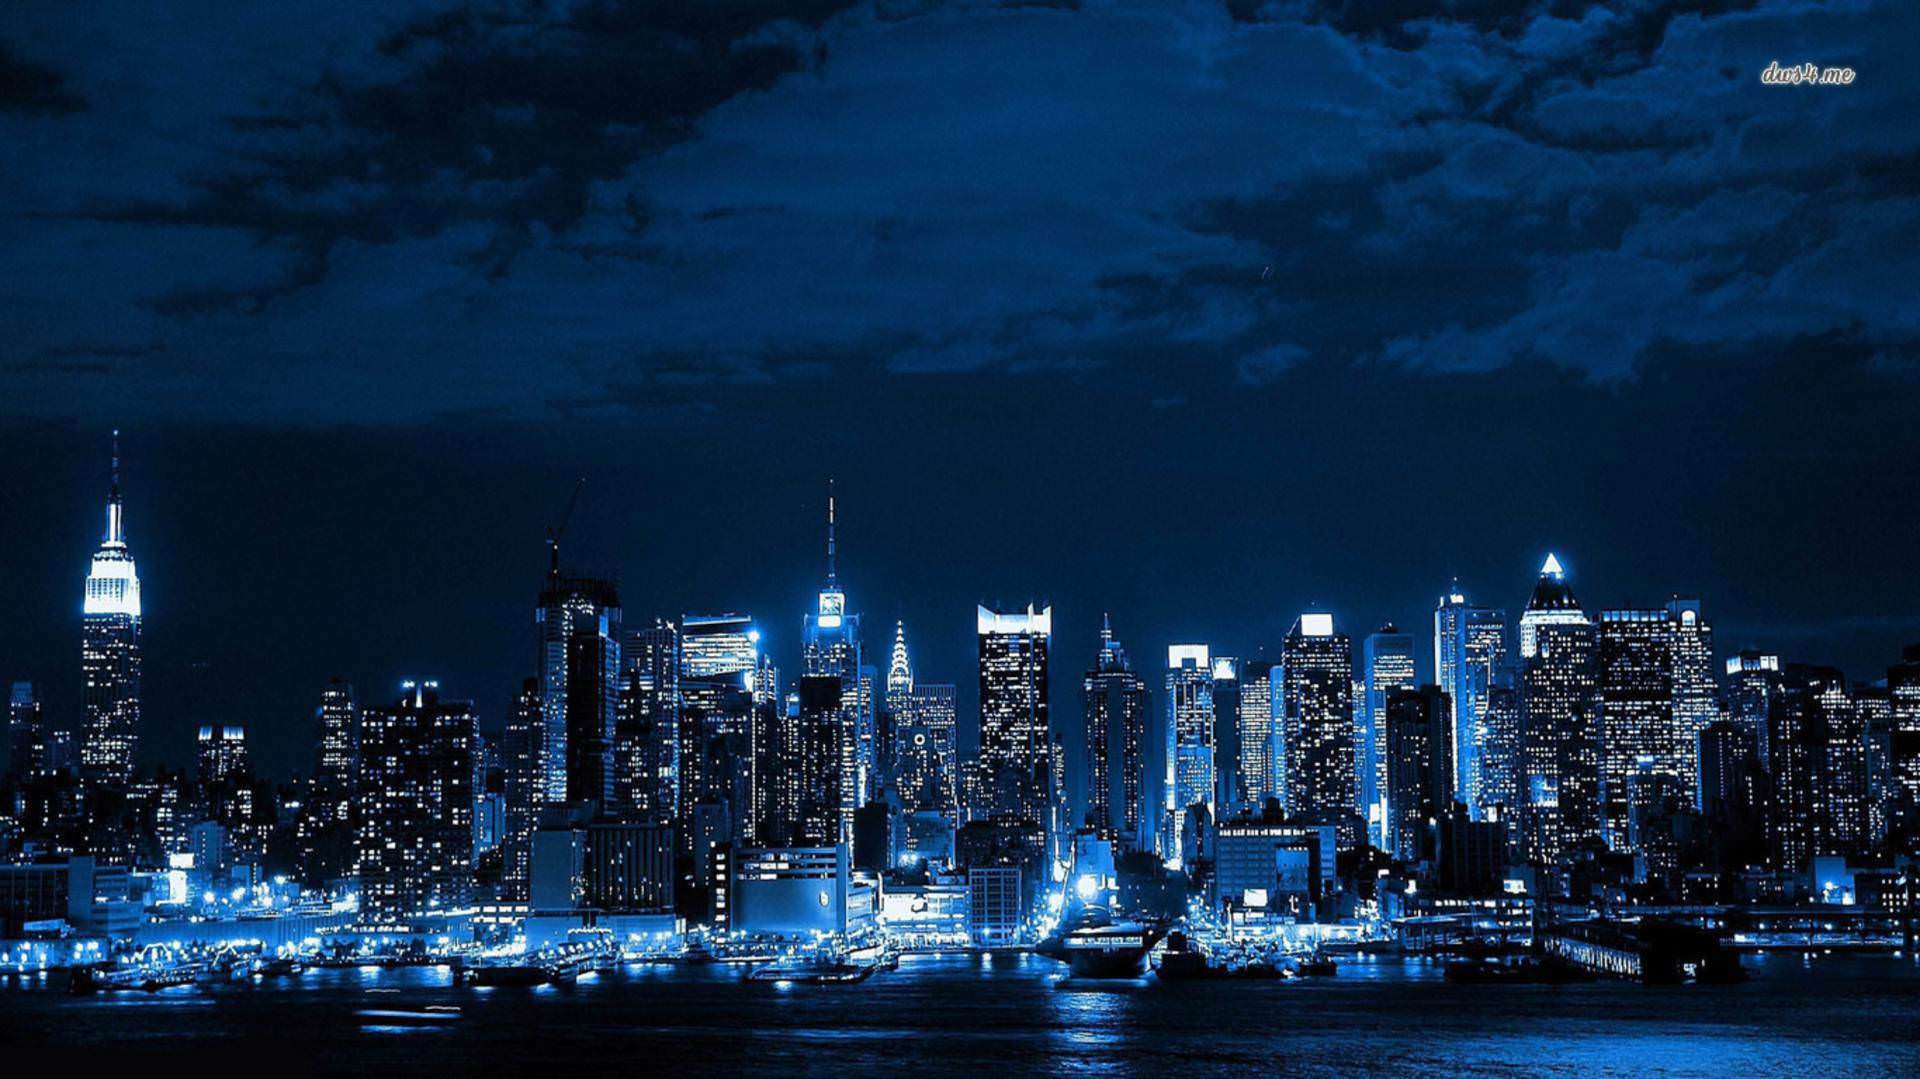 Hình nền máy tính để bàn 1920x1079 Pixel: Hình nền thế giới đường chân trời thành phố New York